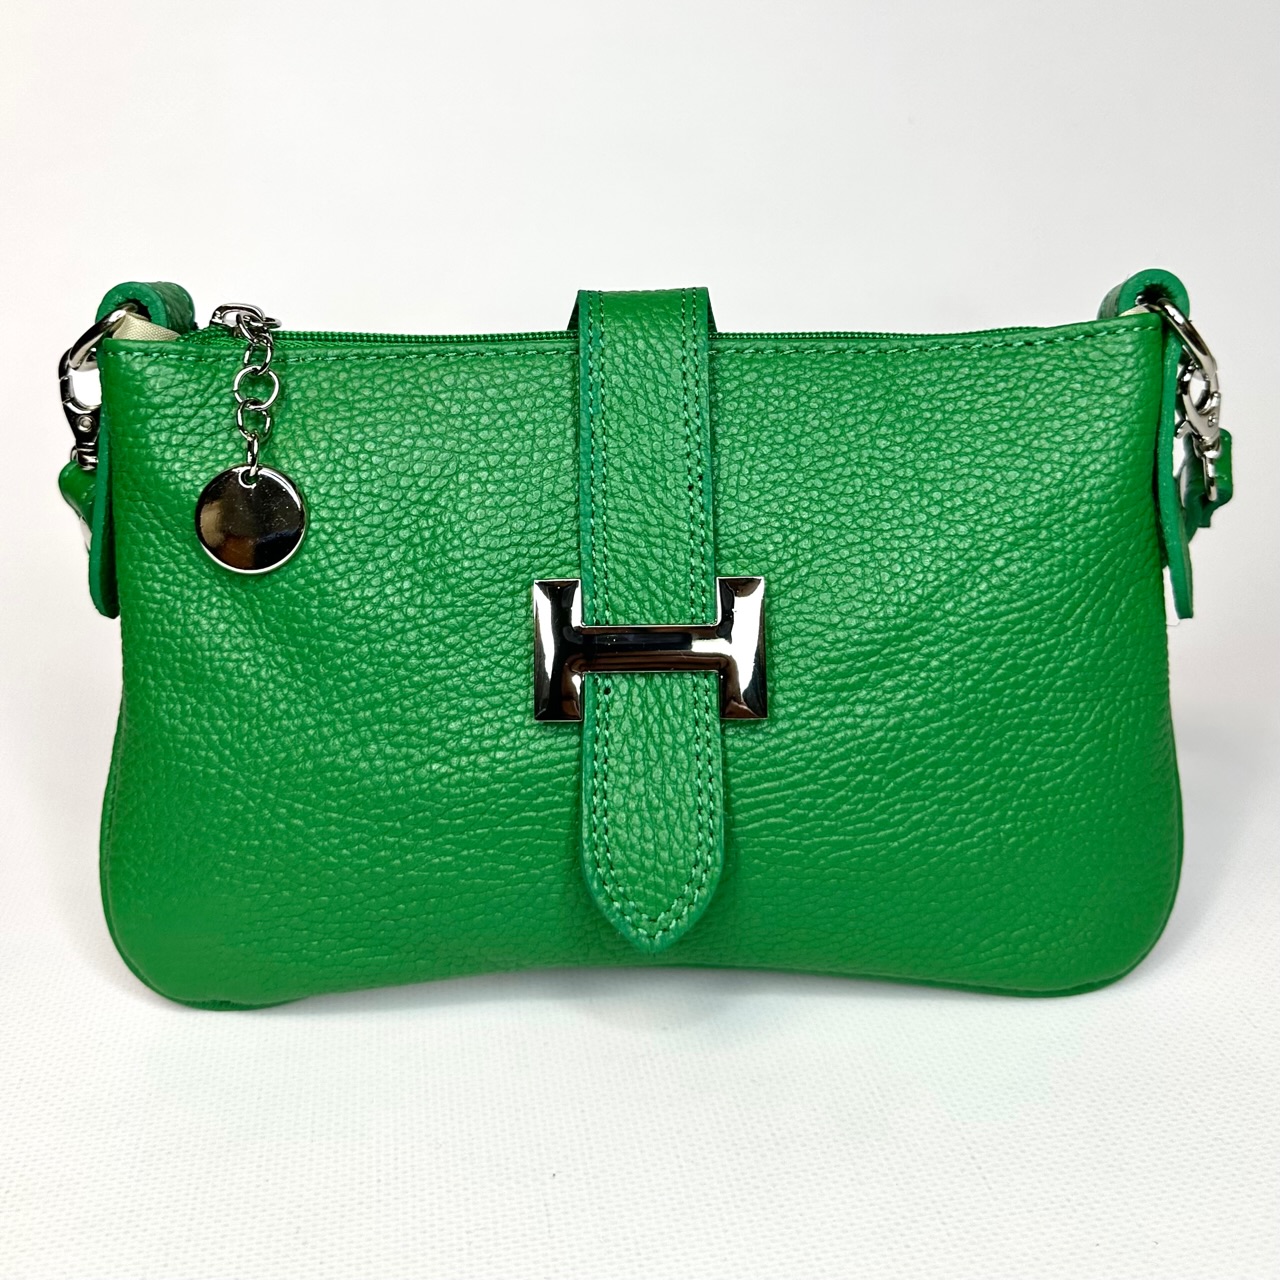 Женская наплечная сумочка кросс боди яркого насыщенного зеленого цвета vera pelle натуральная кожа